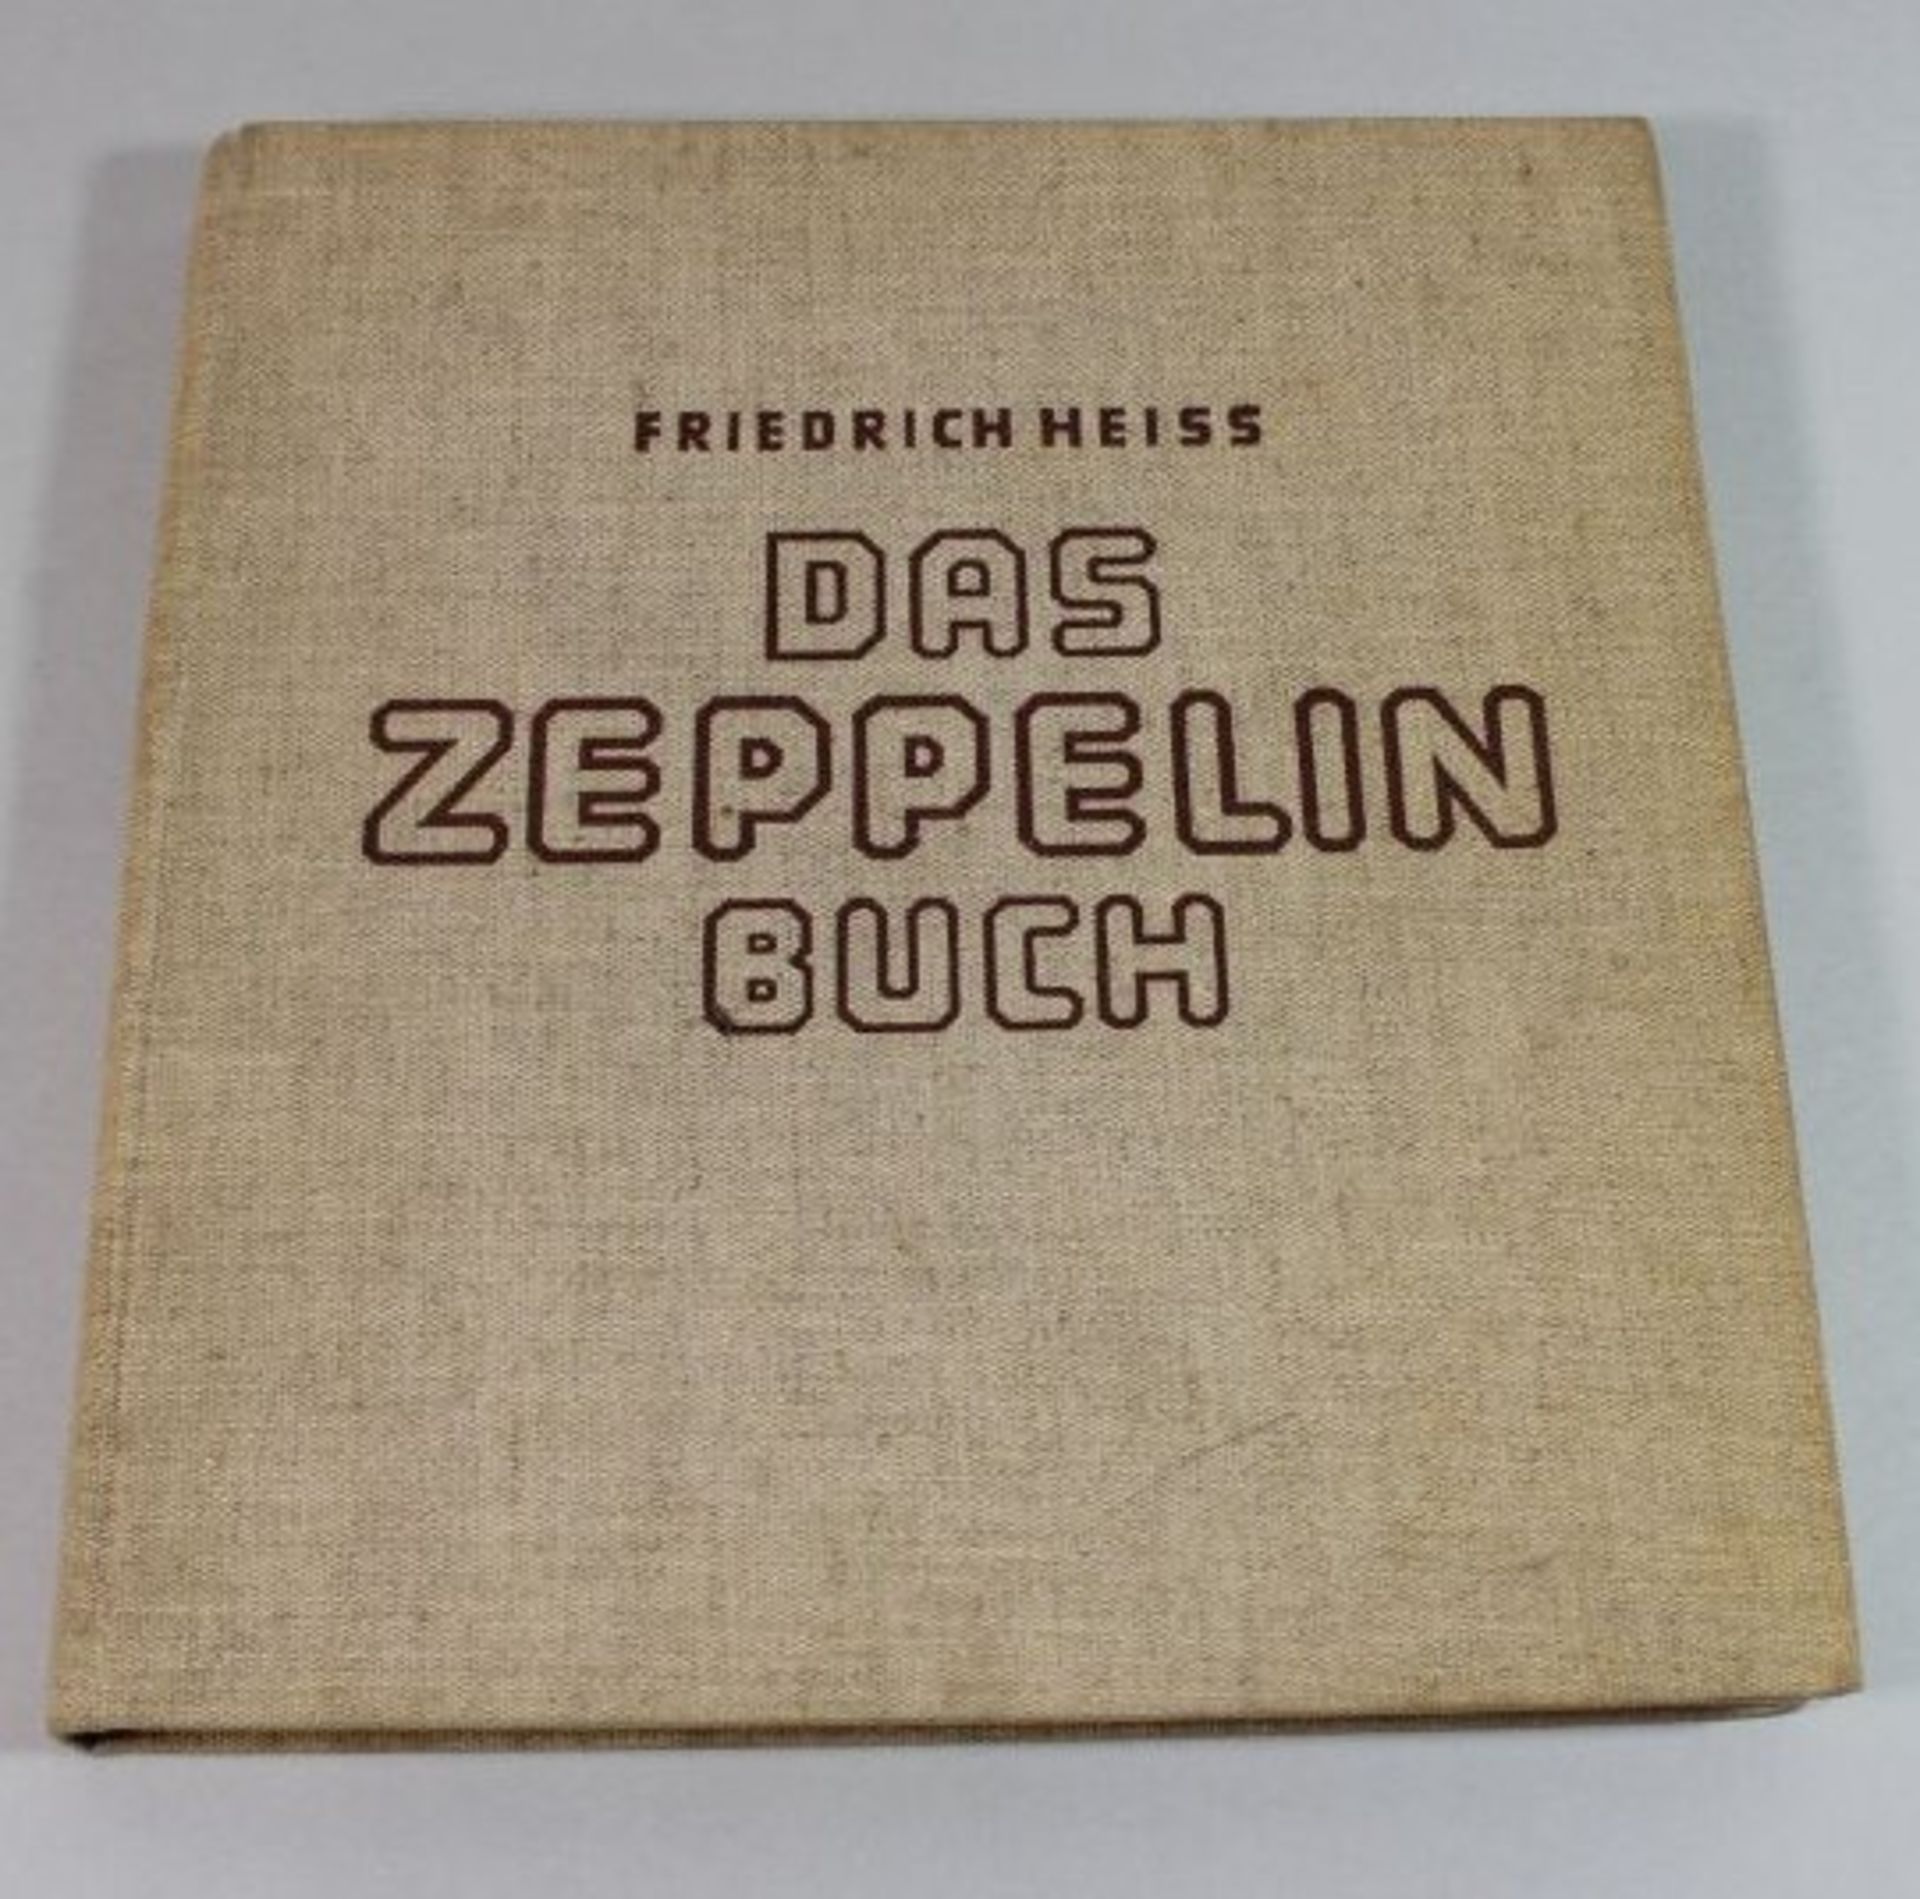 Das Zeppelinbuch, Friedrich Heiß, 1936. Alters-u. Gebrauchsspuren.